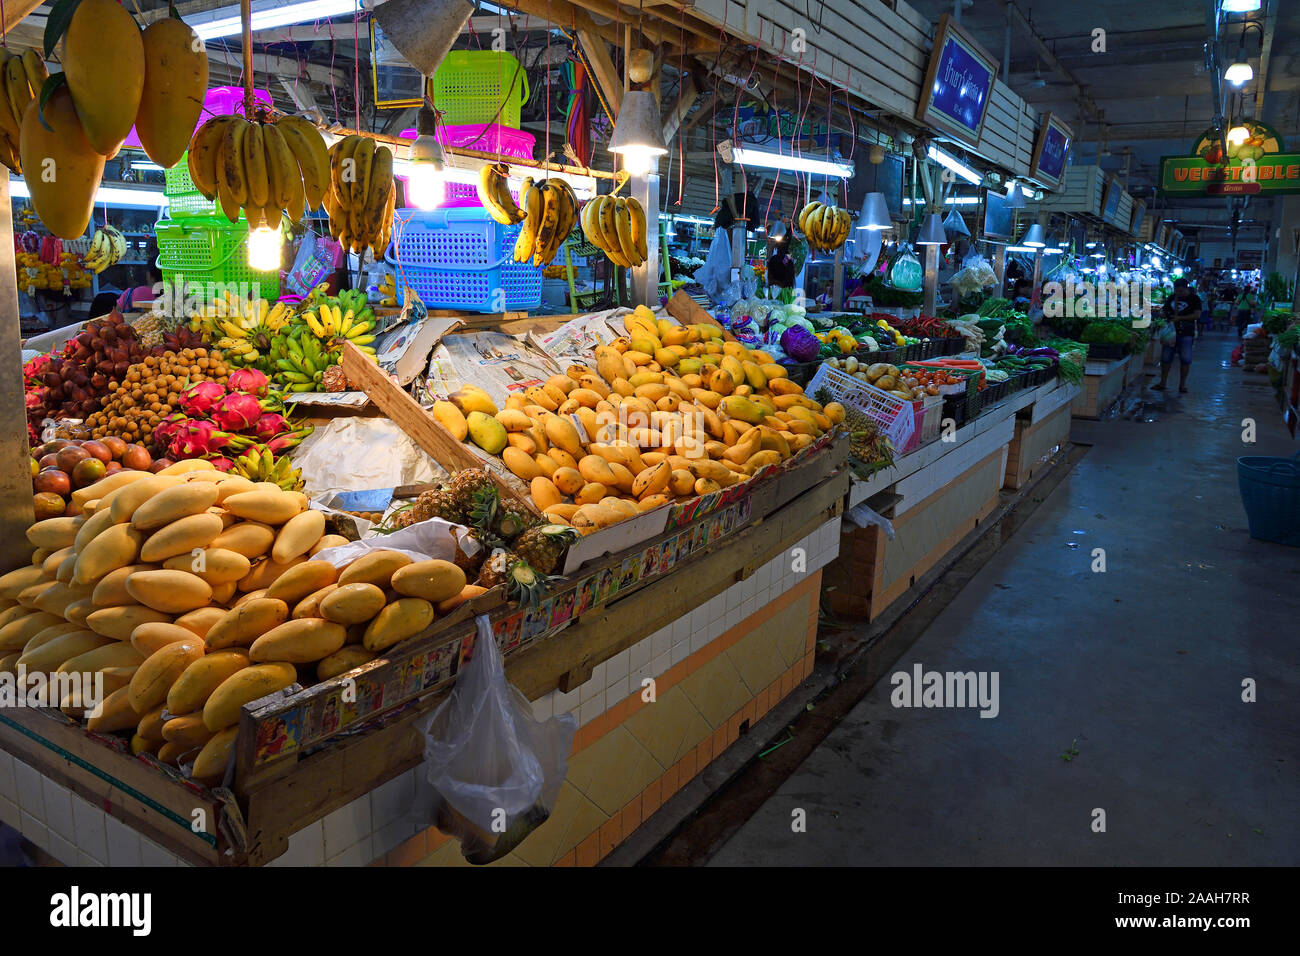 Typische Stände mit riesiger Auswahl un frischem Obst und Gemüse auf dem Banzaan mercato fresco, Patong Beach, Phuket, Tailandia Foto Stock